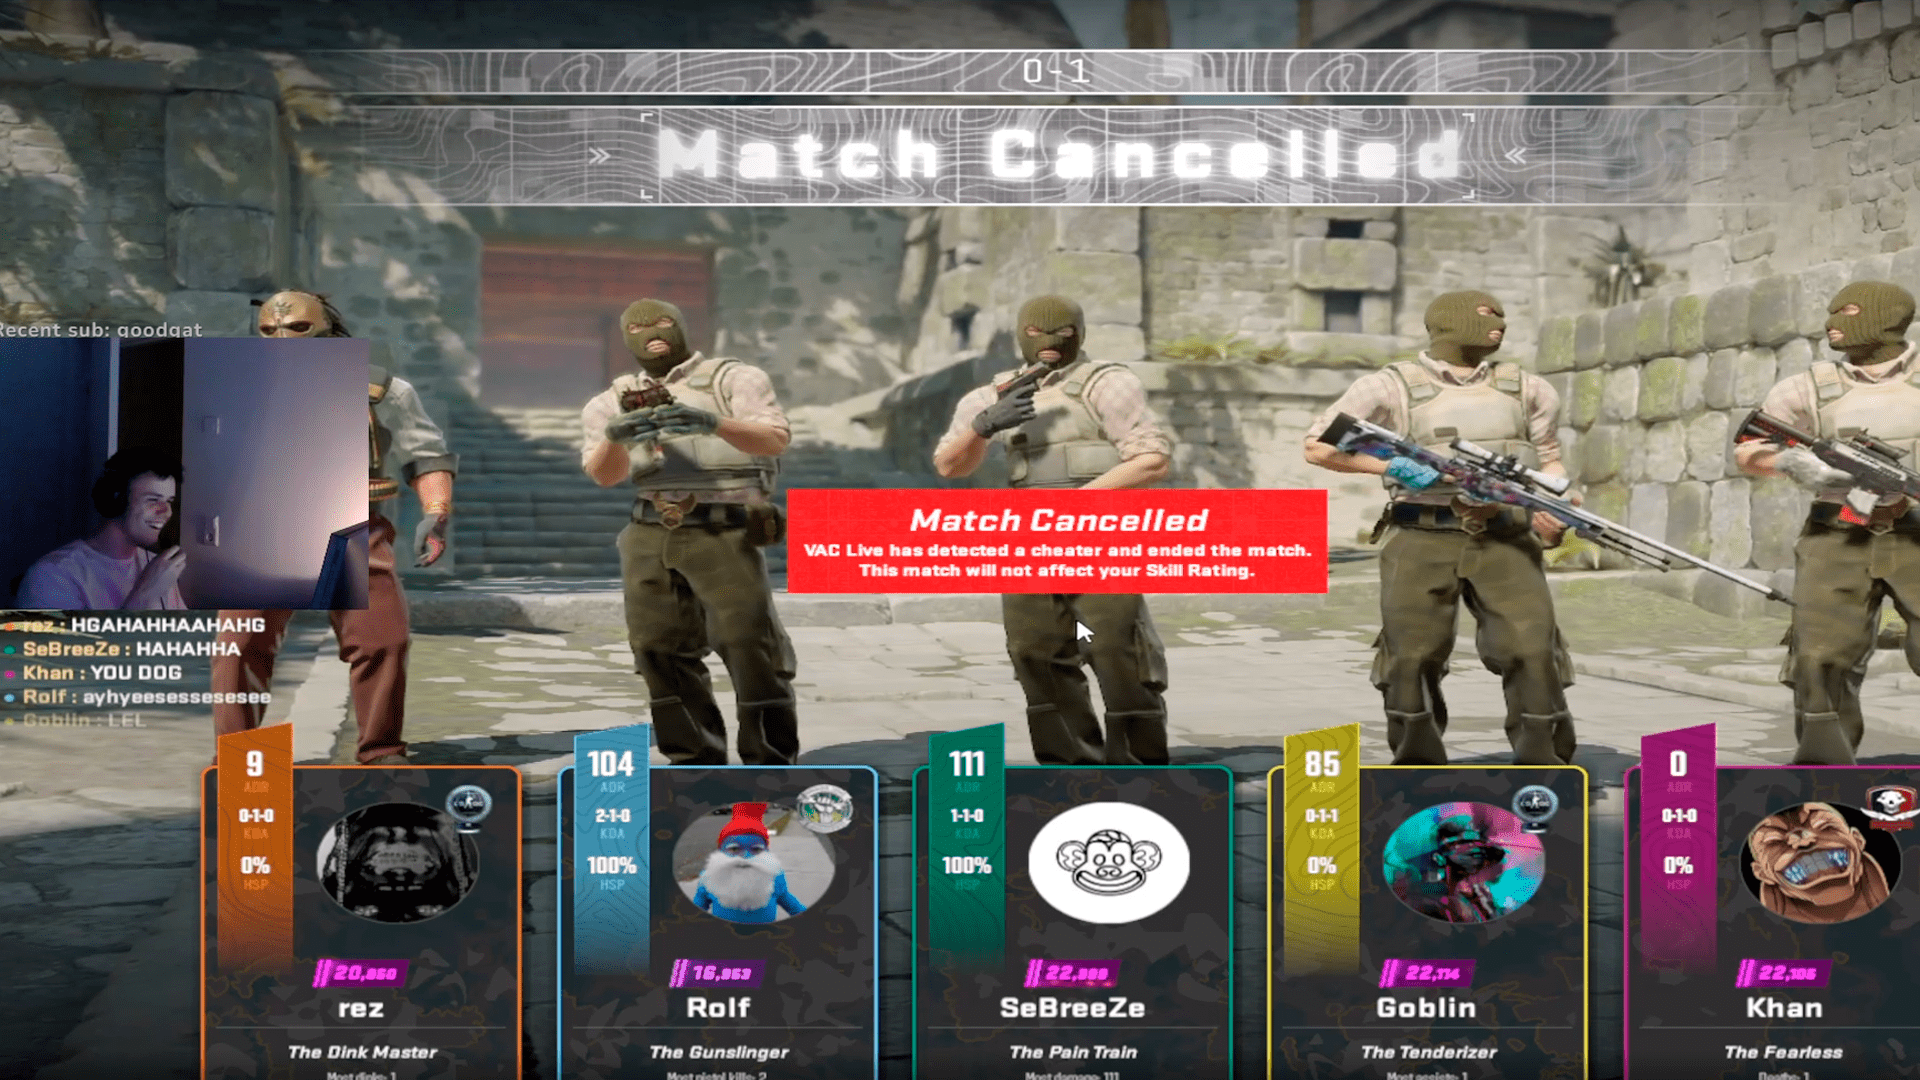 CS2: Valve introduzirá novas armas no jogo